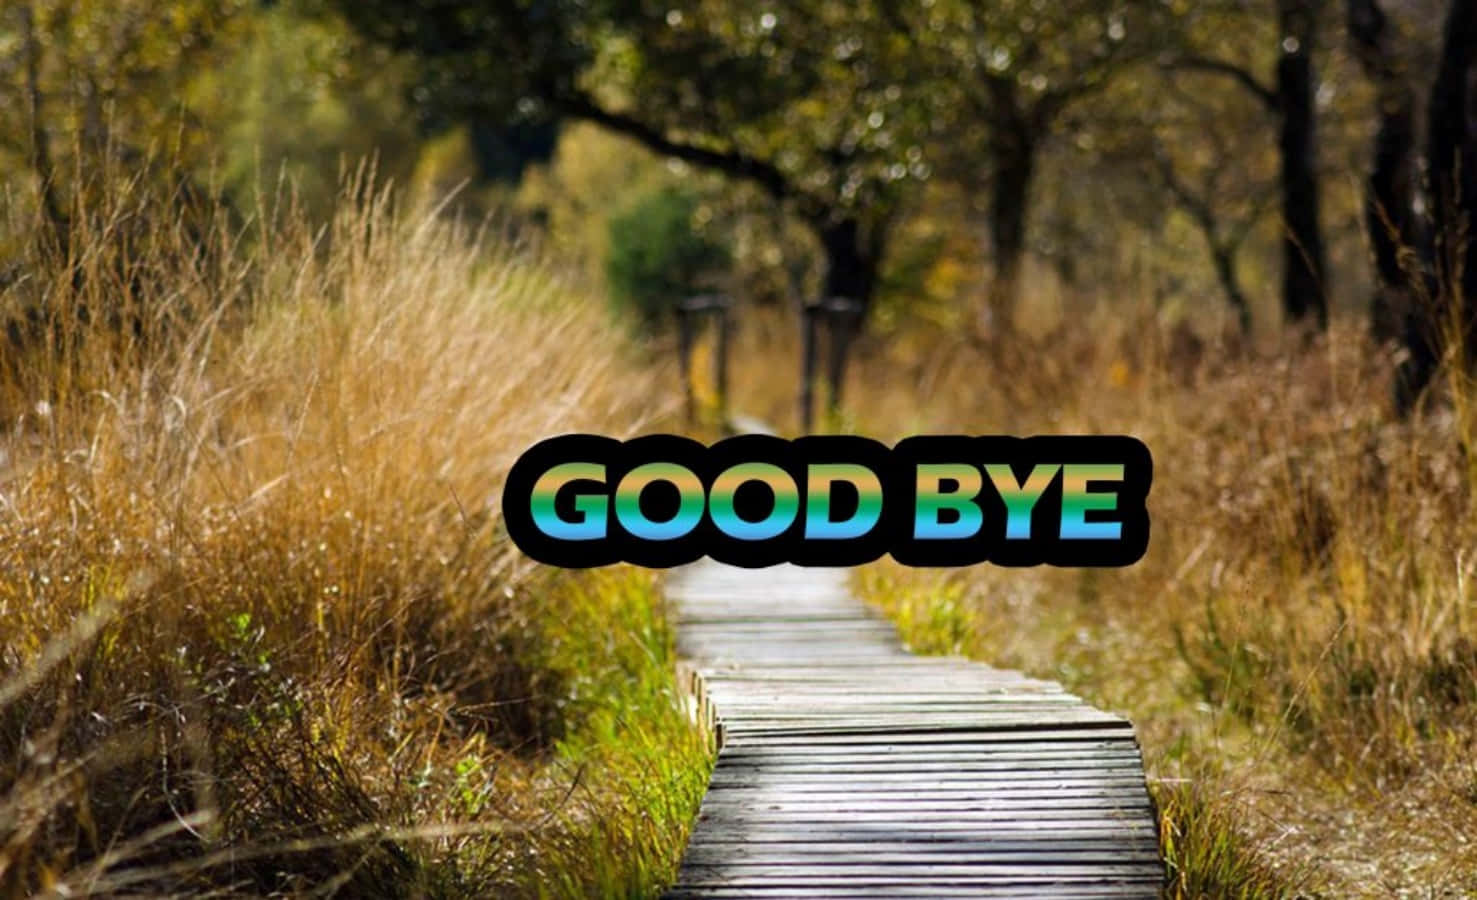 Saying goodbye is never easy